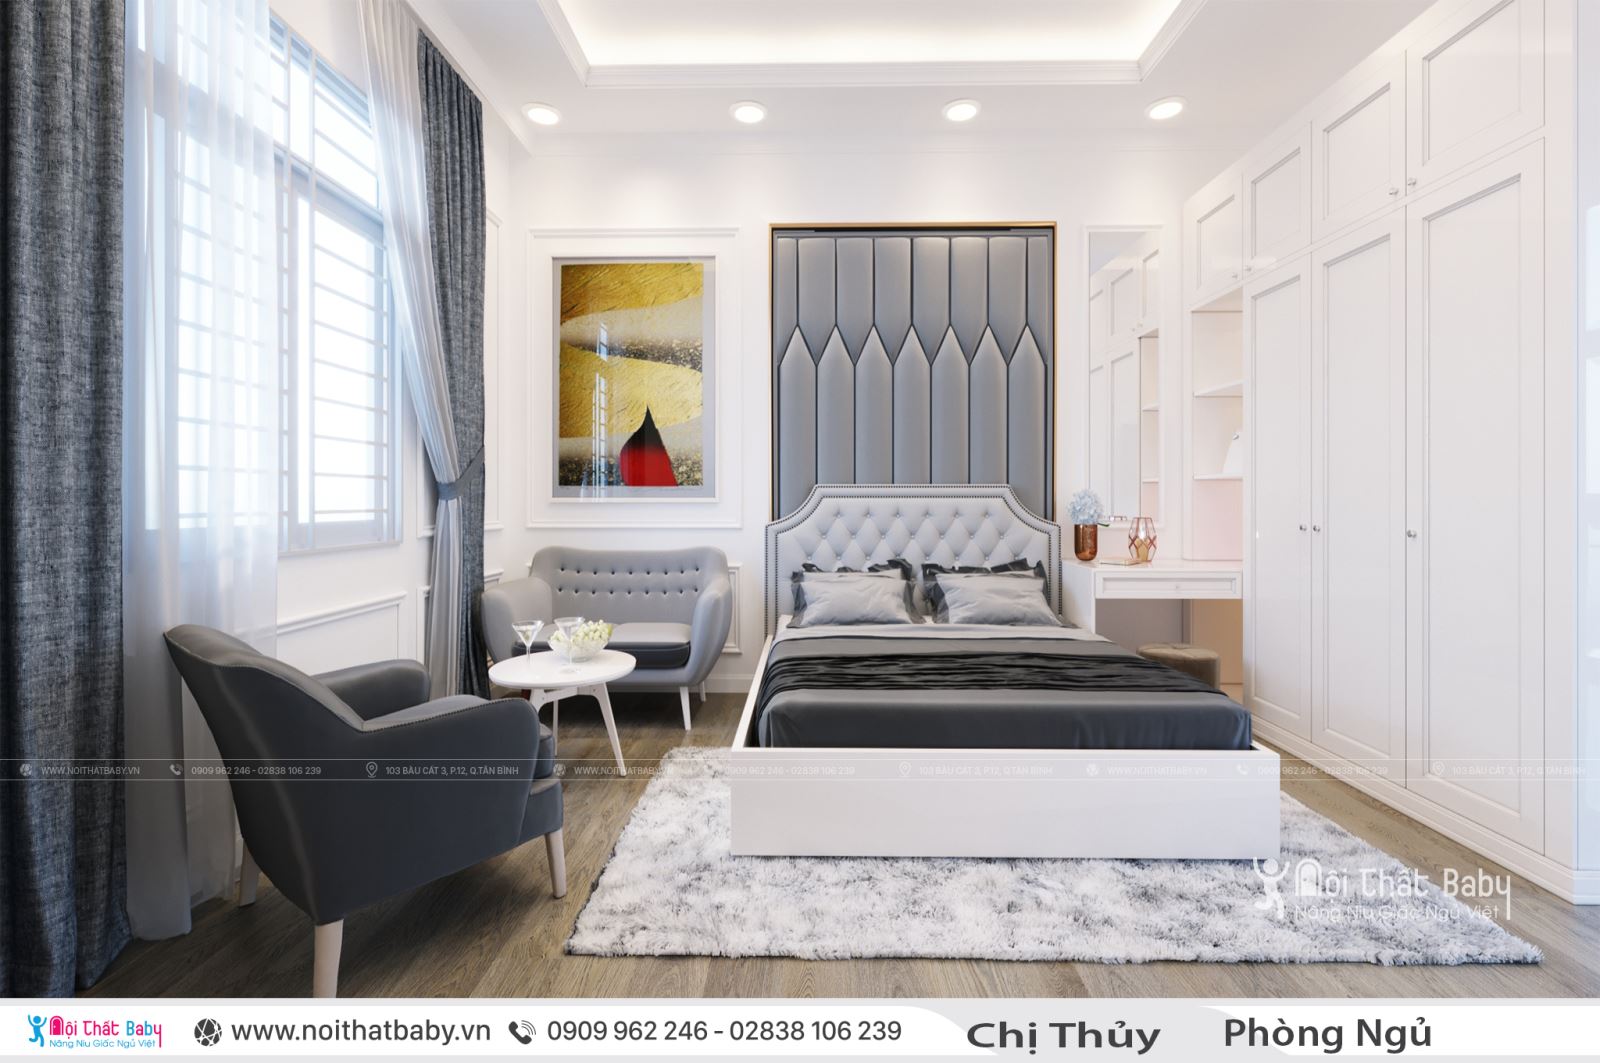 Các mẫu thiết kế nội thất đẹp hiện đai cho ngôi nhà _ Xu hướng 2019